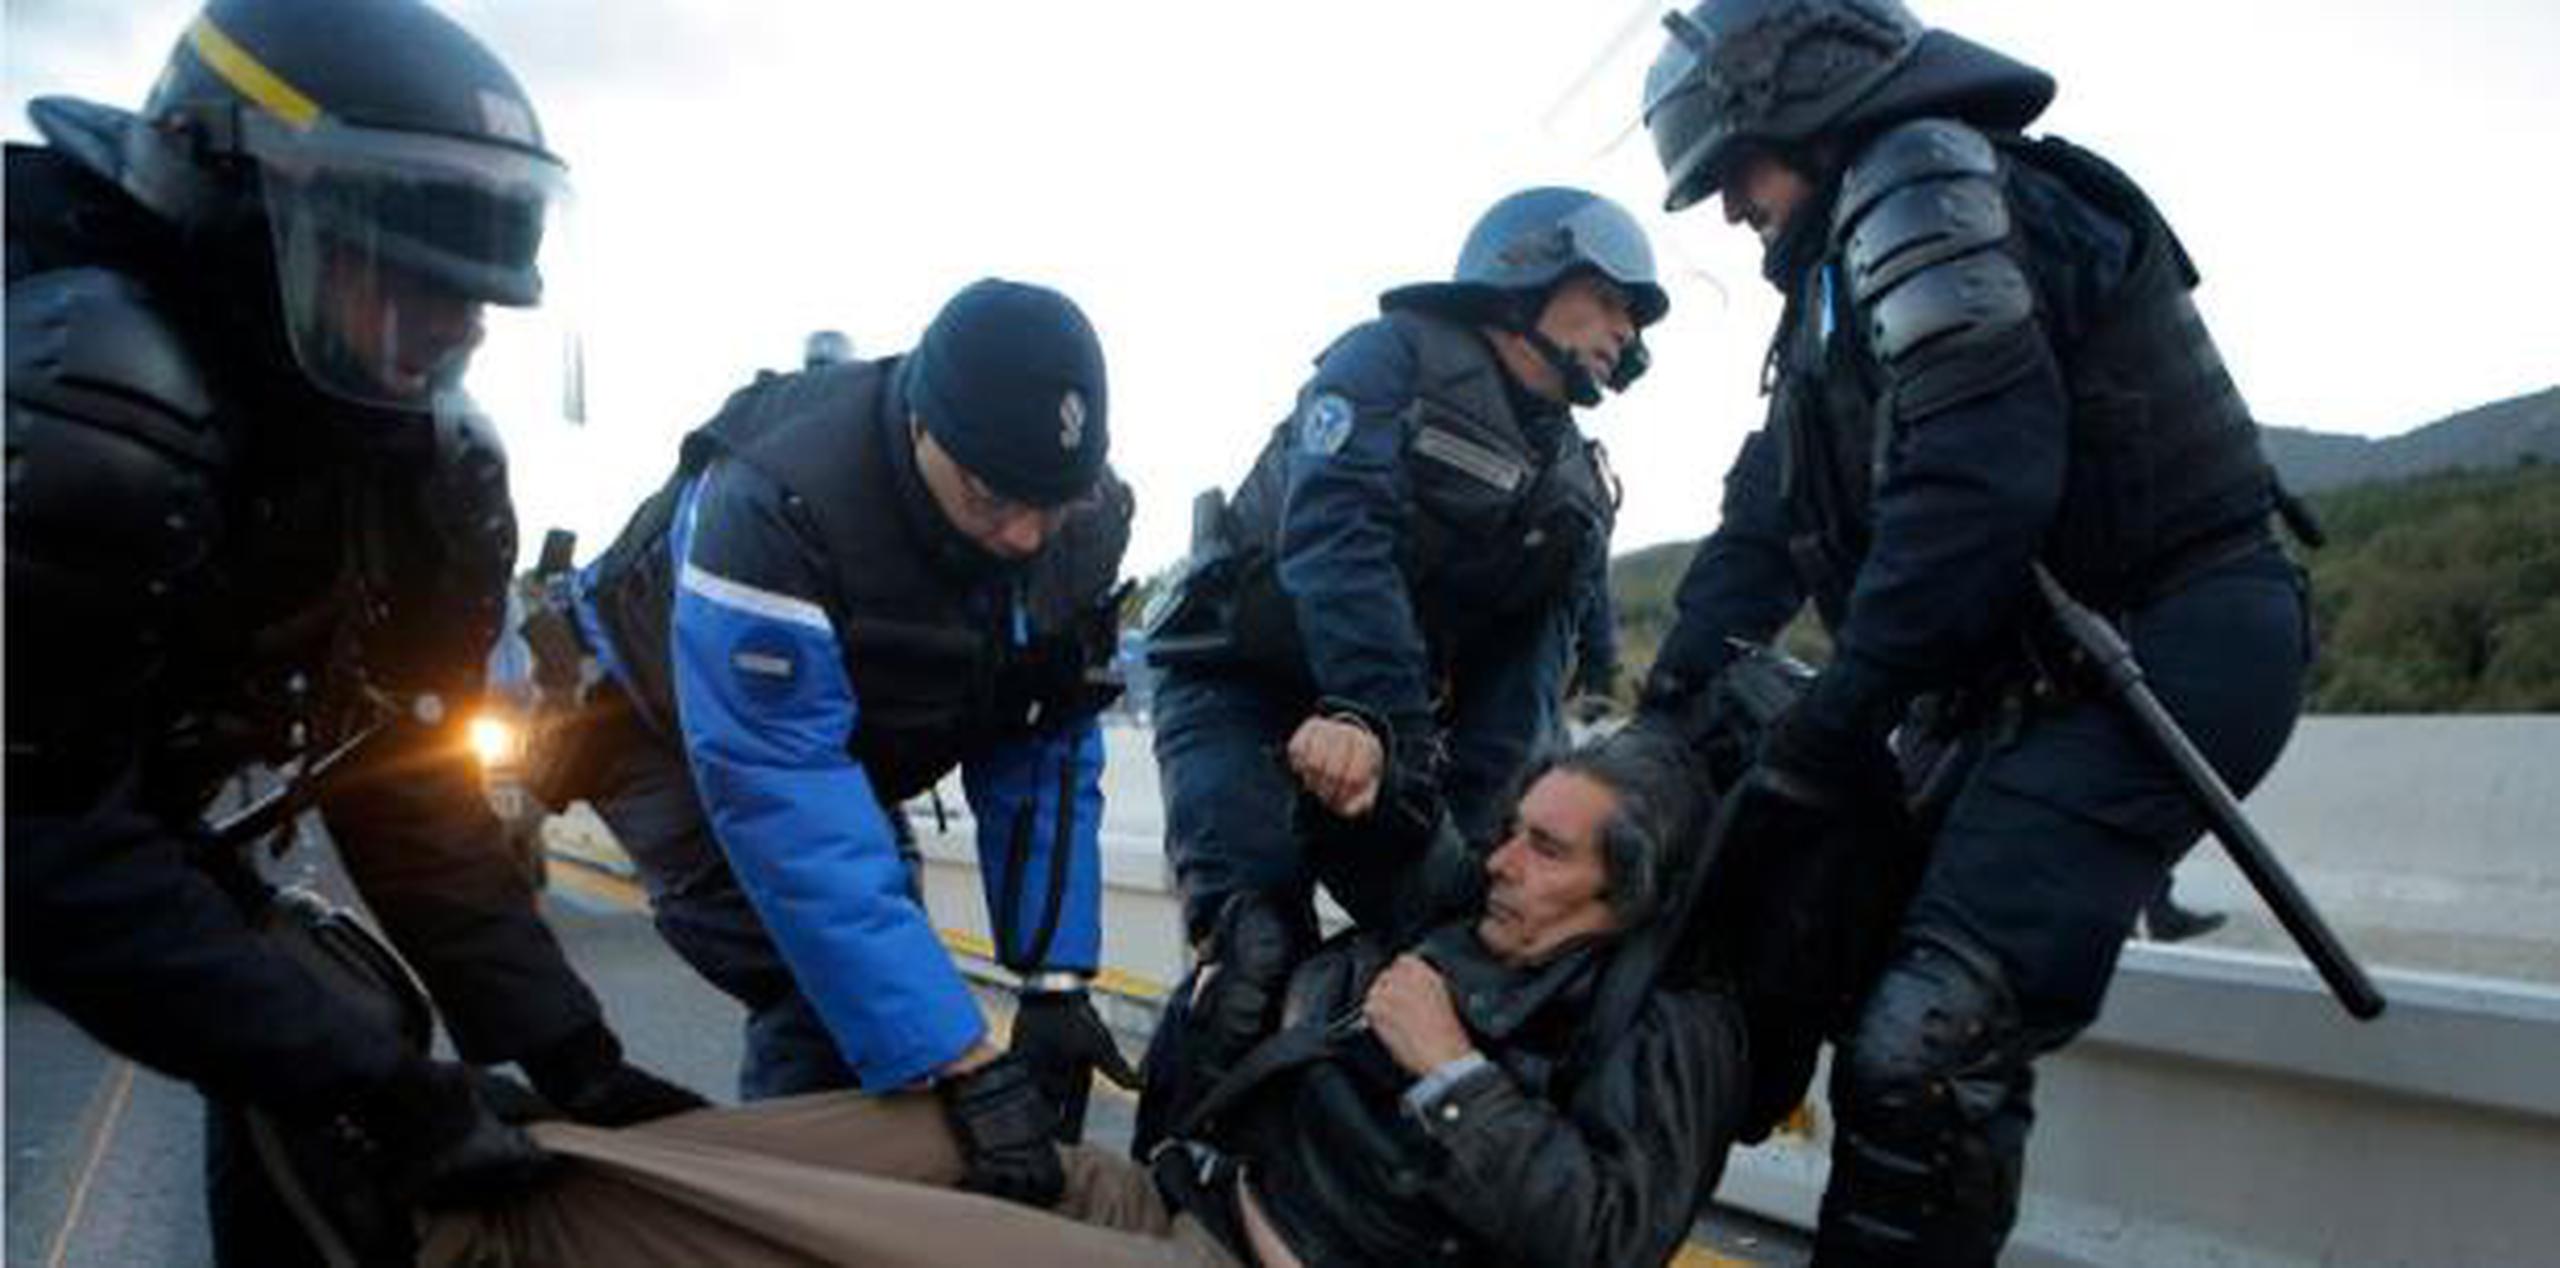 Cientos de activistas permanecieron en torno al paso de La Jonquera, mientras policías regionales catalanes se mantenían en guardia en el lado español de la frontera. (AP)